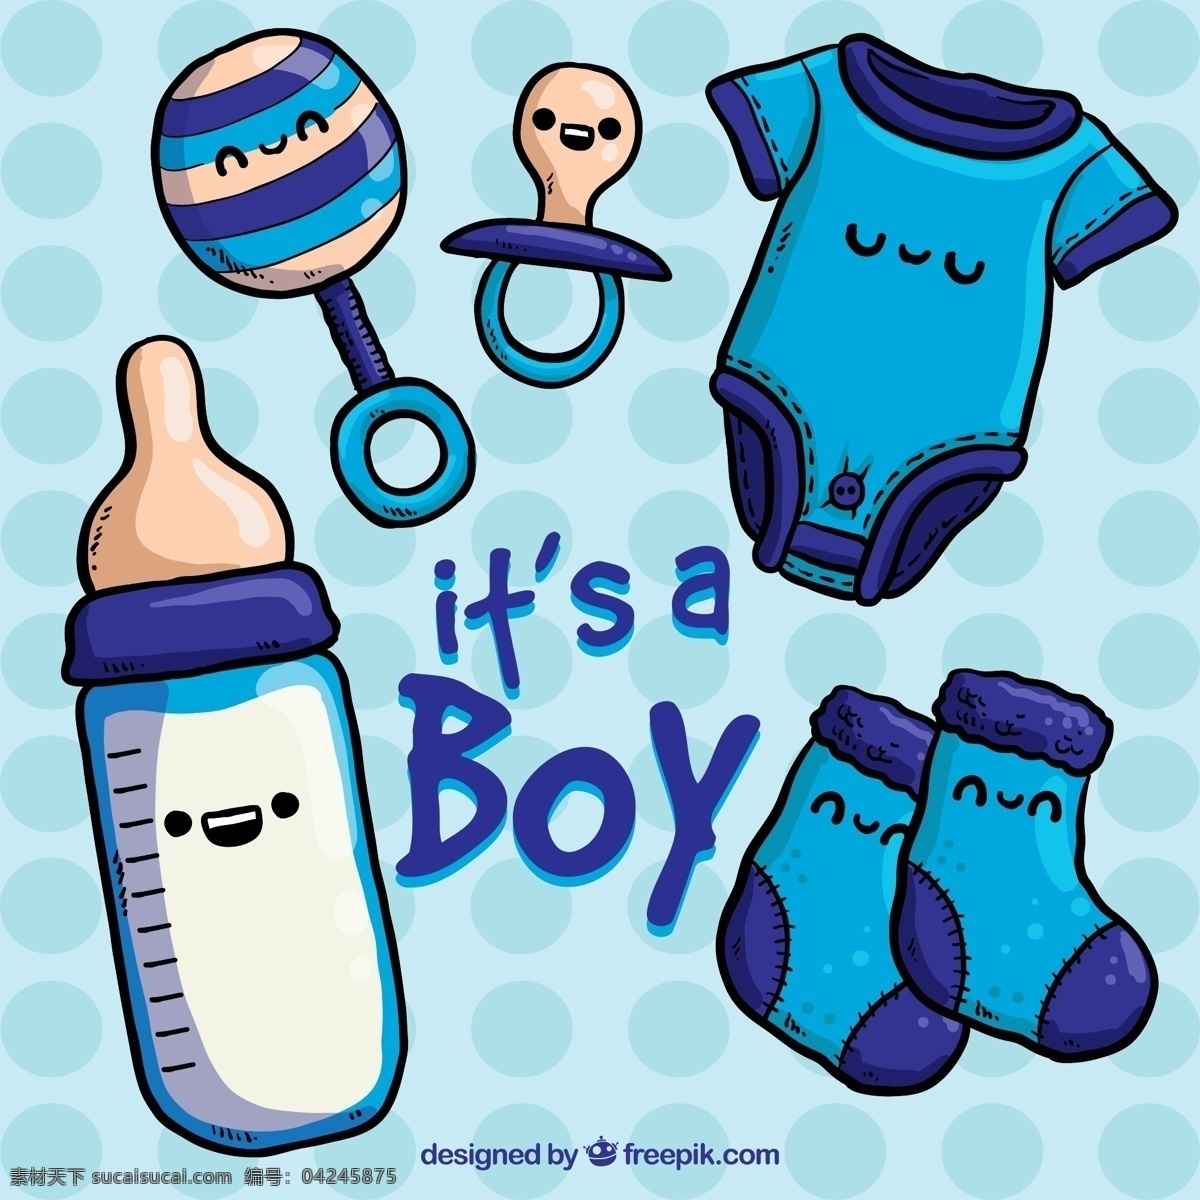 可爱 婴儿用品 矢量 安抚奶嘴 摇铃 奶瓶 袜子 爬服 婴儿 水玉点 蓝色 男婴 矢量图 青色 天蓝色